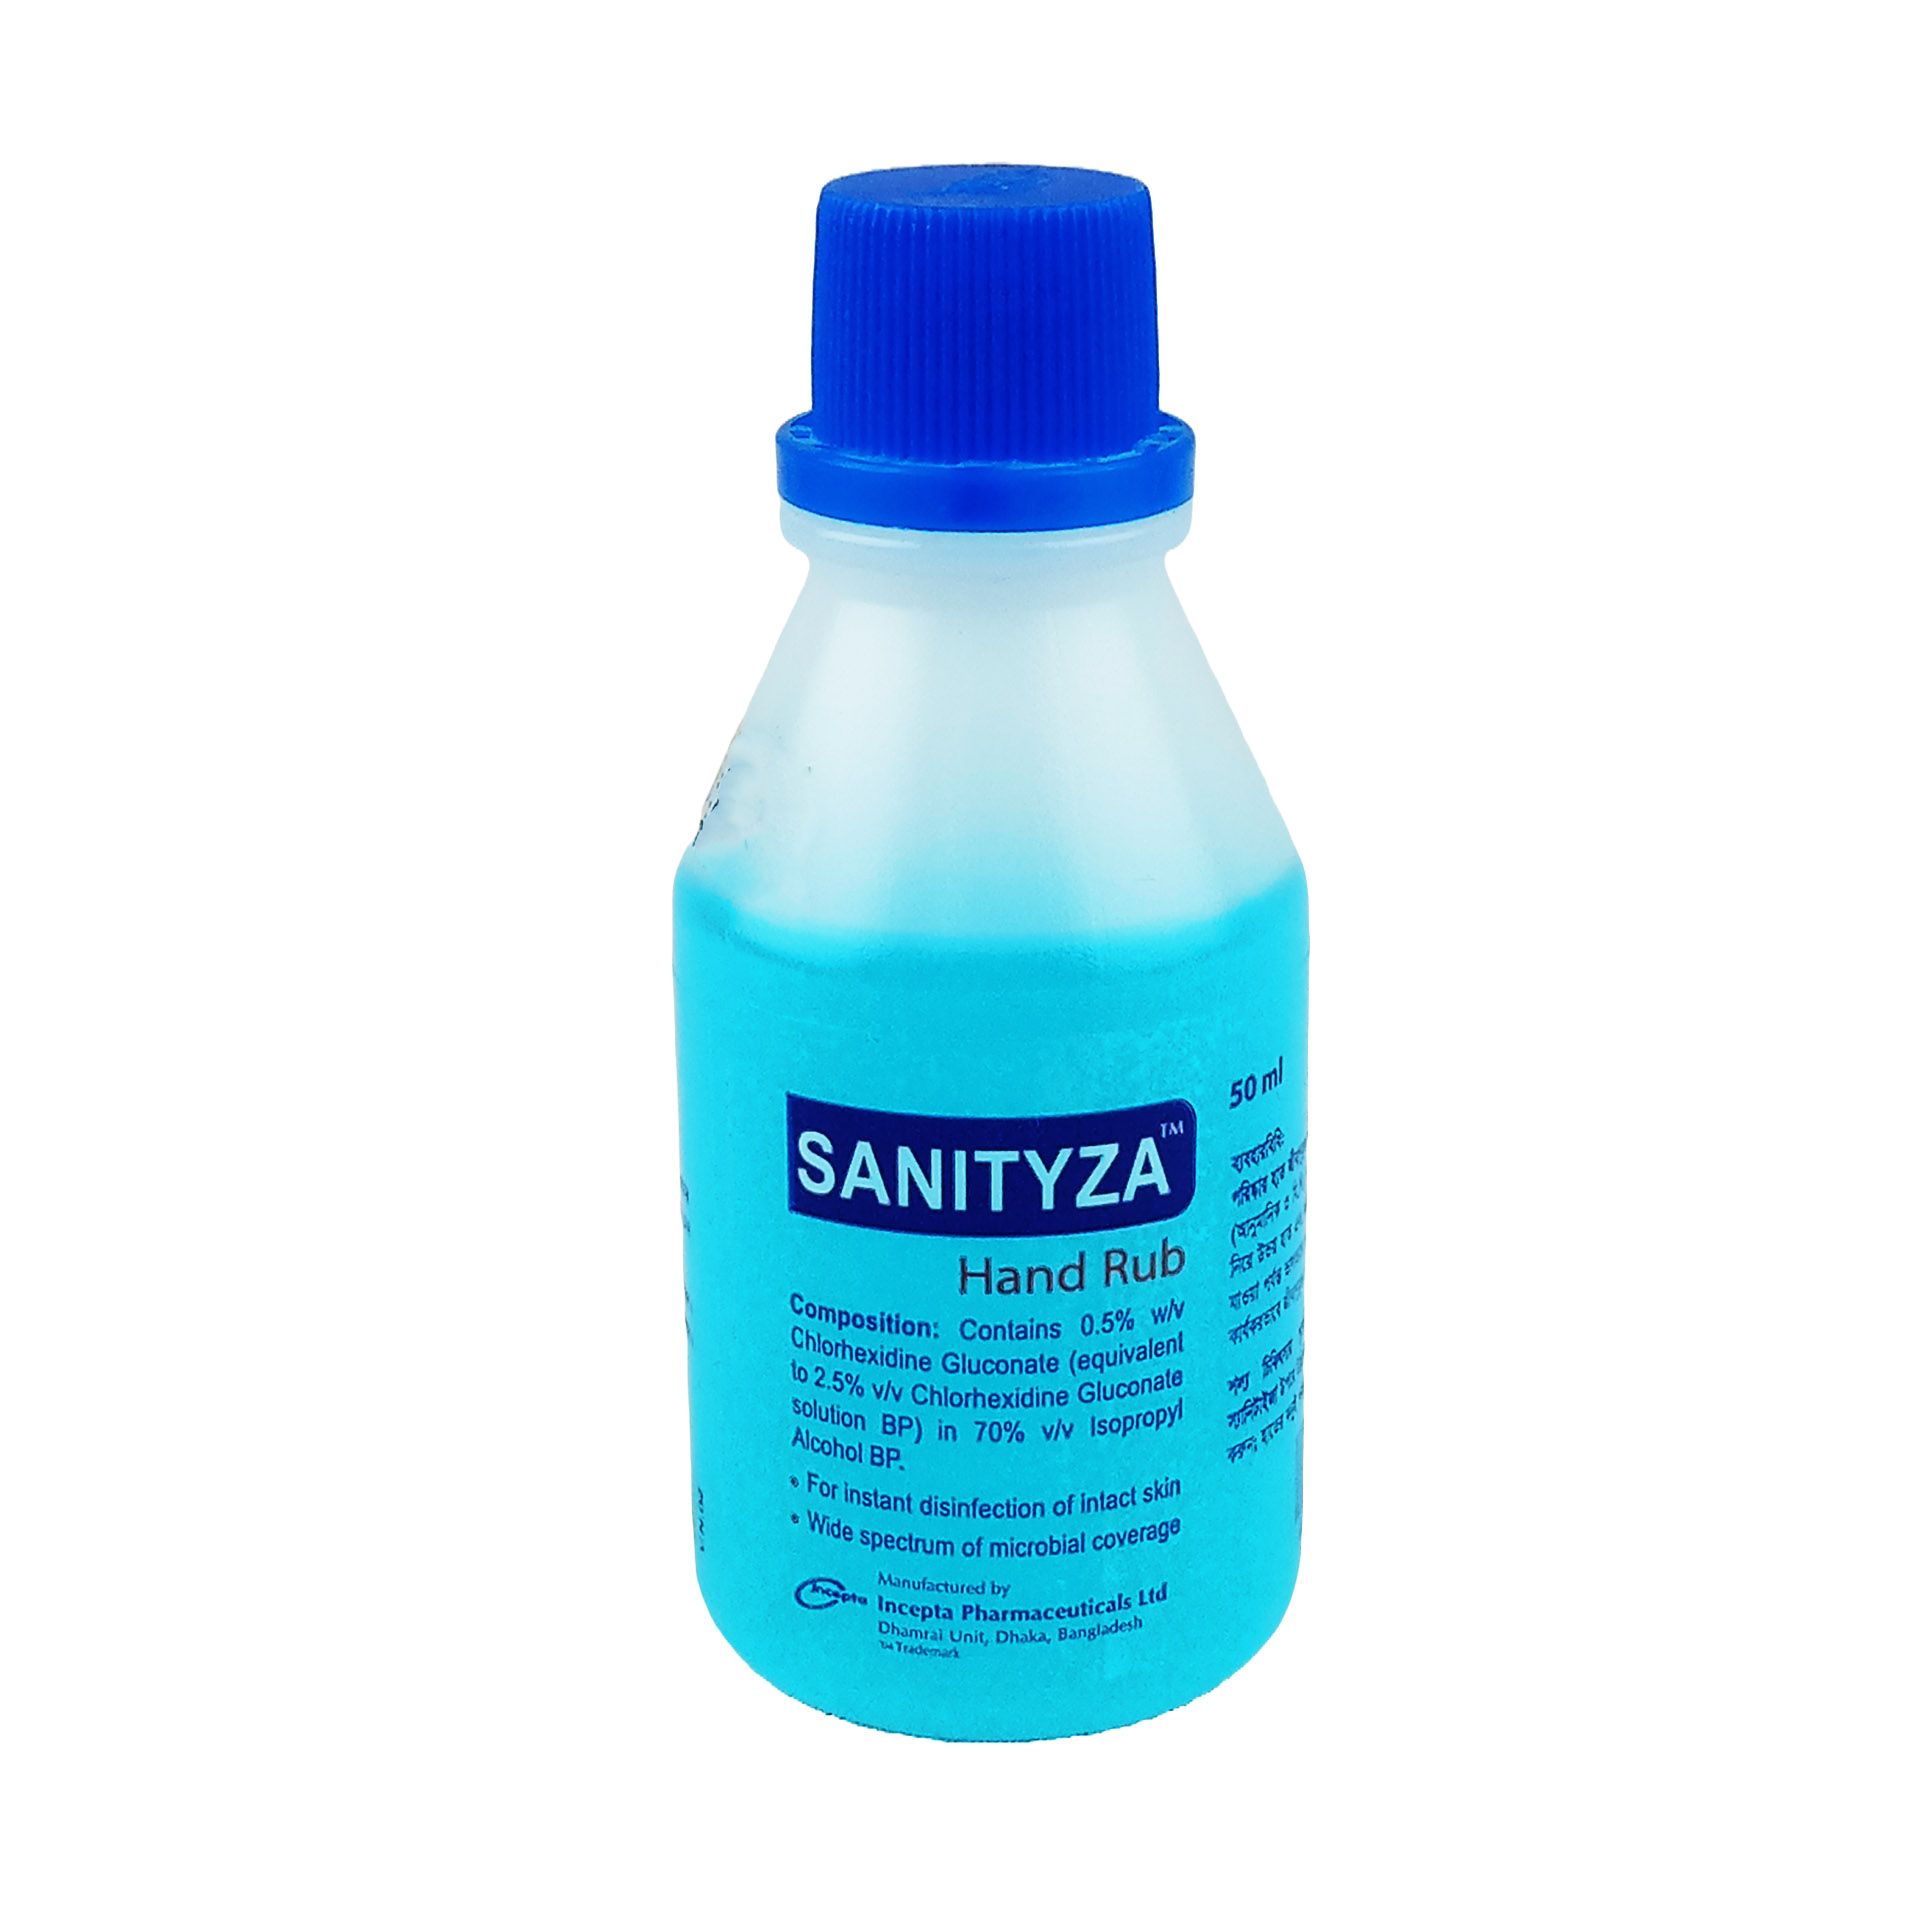 Sanityza 50ml 0.5%+70% Hand Rub